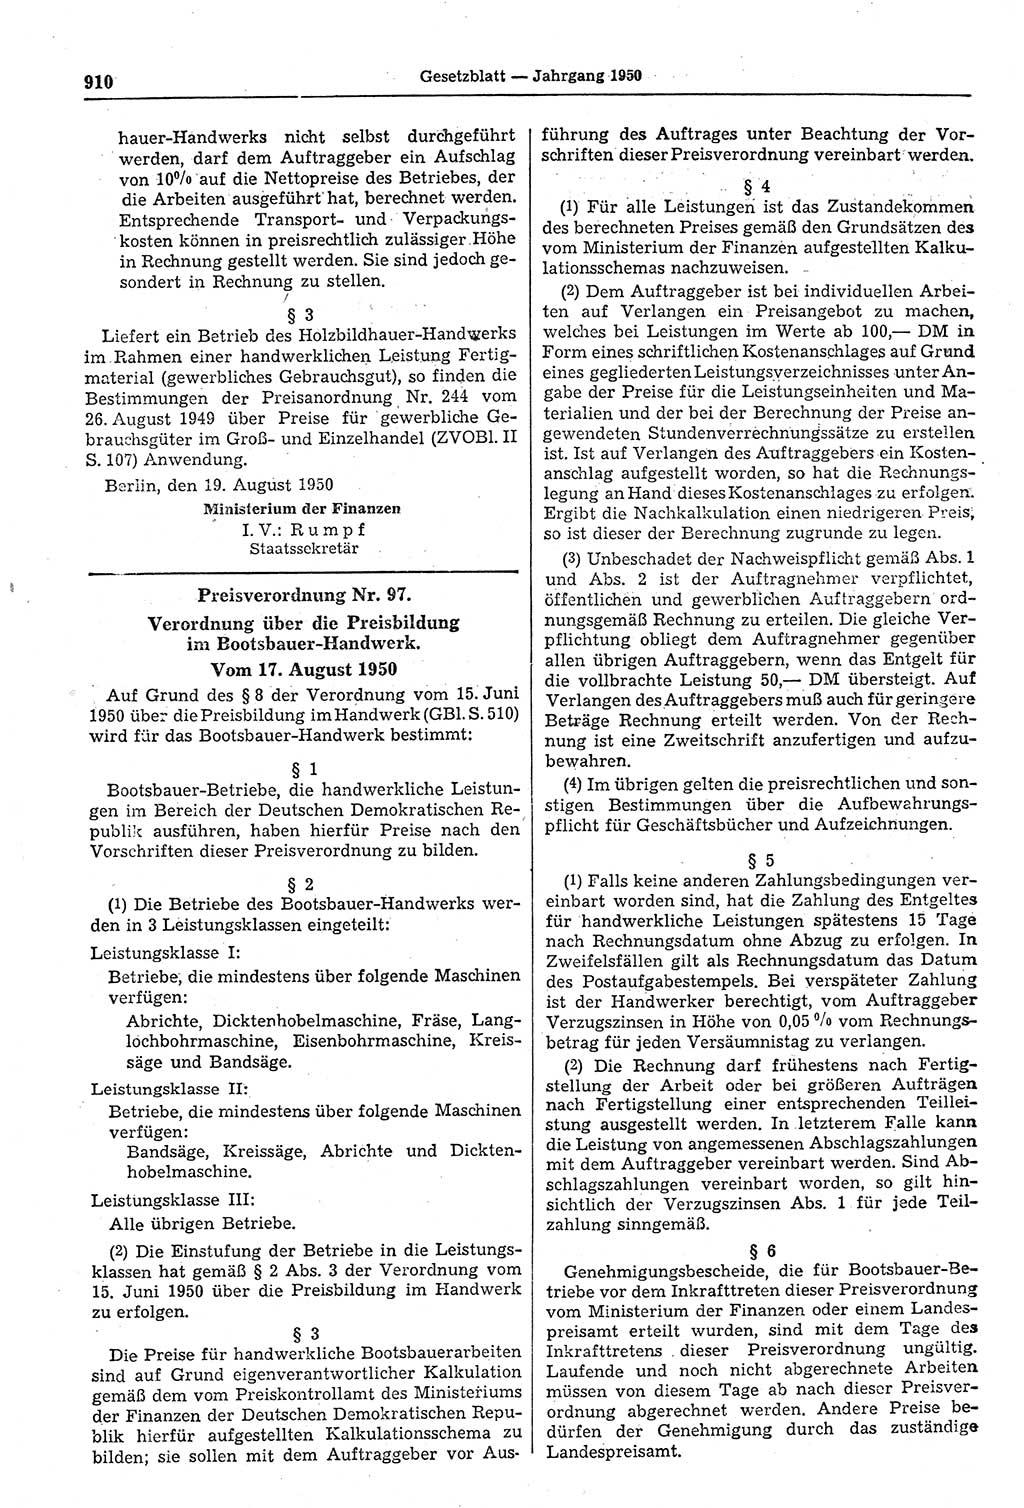 Gesetzblatt (GBl.) der Deutschen Demokratischen Republik (DDR) 1950, Seite 910 (GBl. DDR 1950, S. 910)